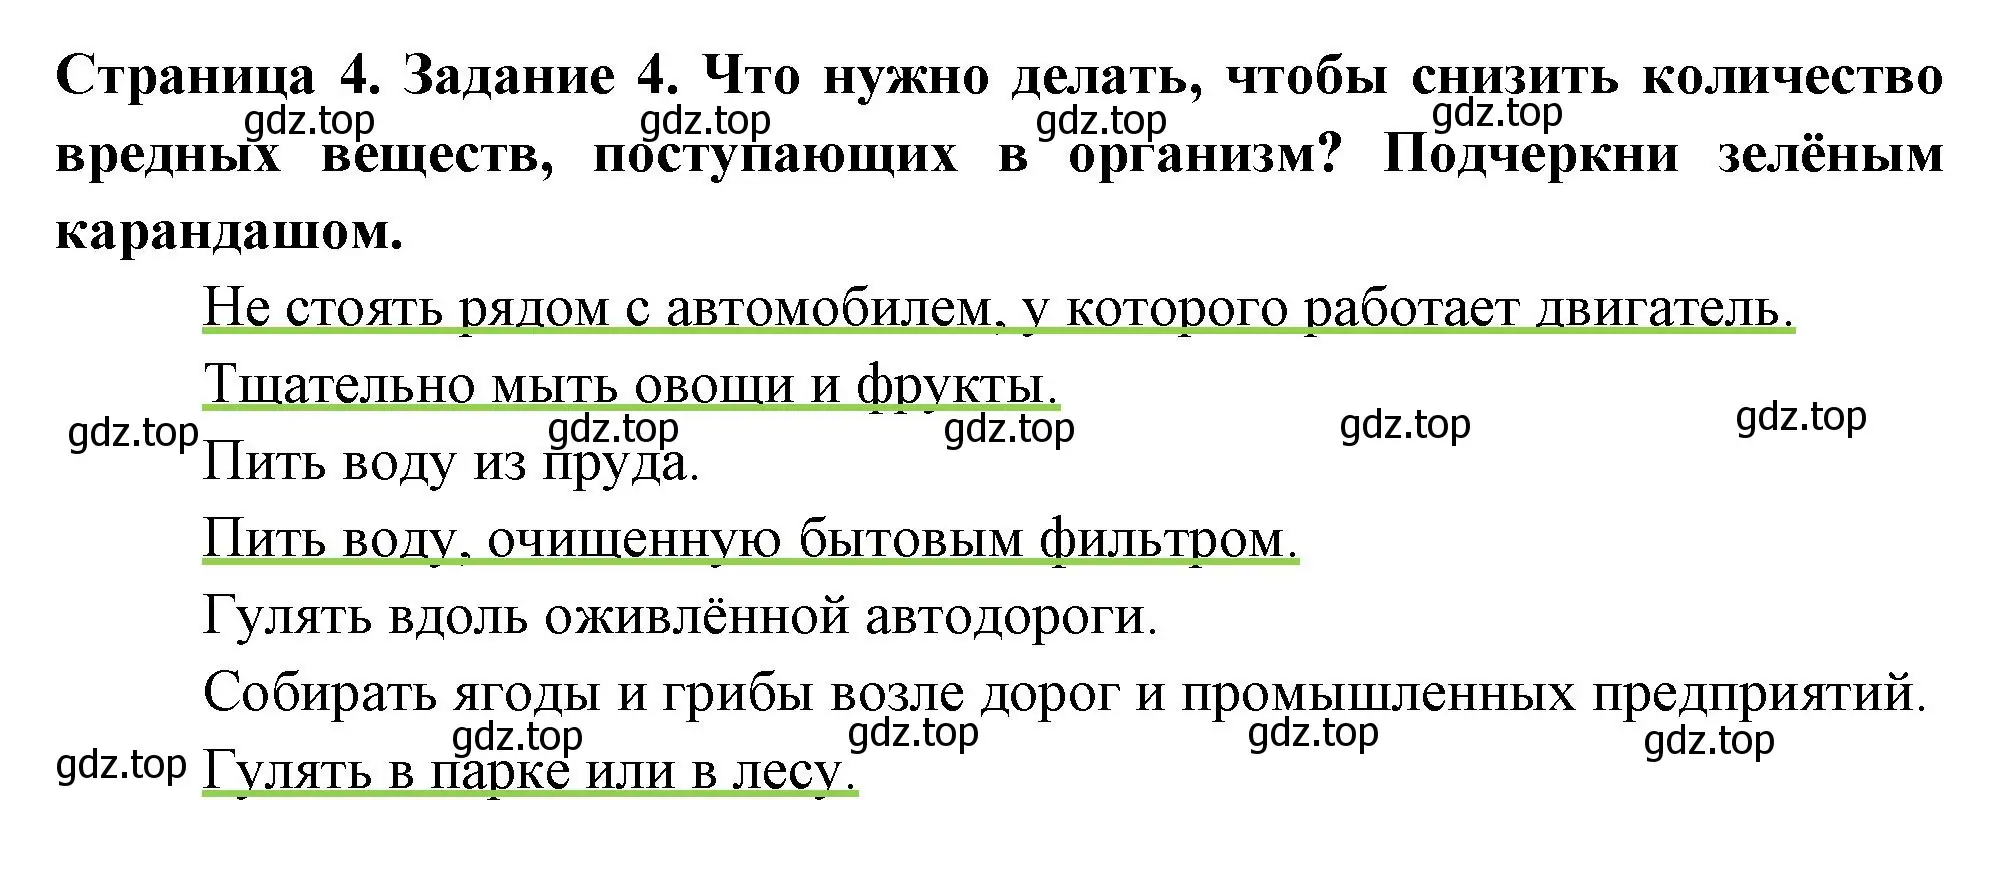 Решение номер 4 (страница 4) гдз по окружающему миру 4 класс Плешаков, Крючкова, проверочные работы